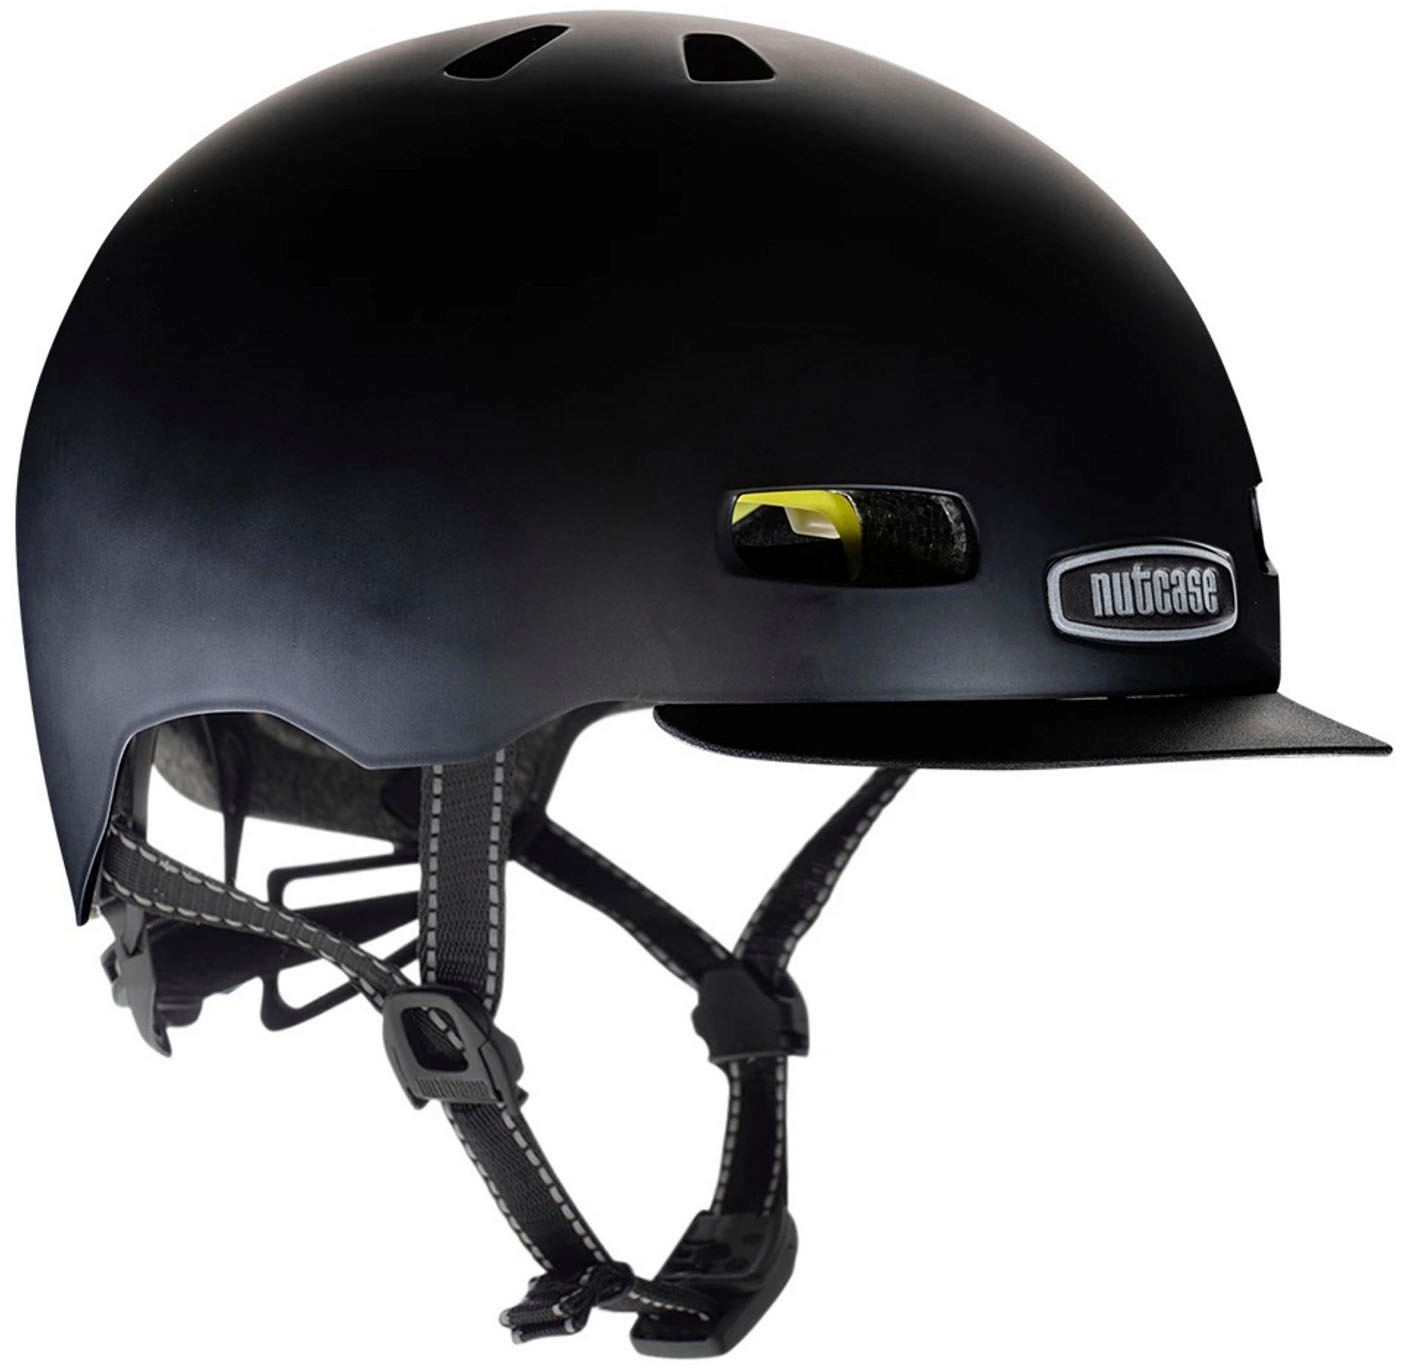 Nutcase - Street Bike Helmet with MIPS - Large - Onyx Solid Satin